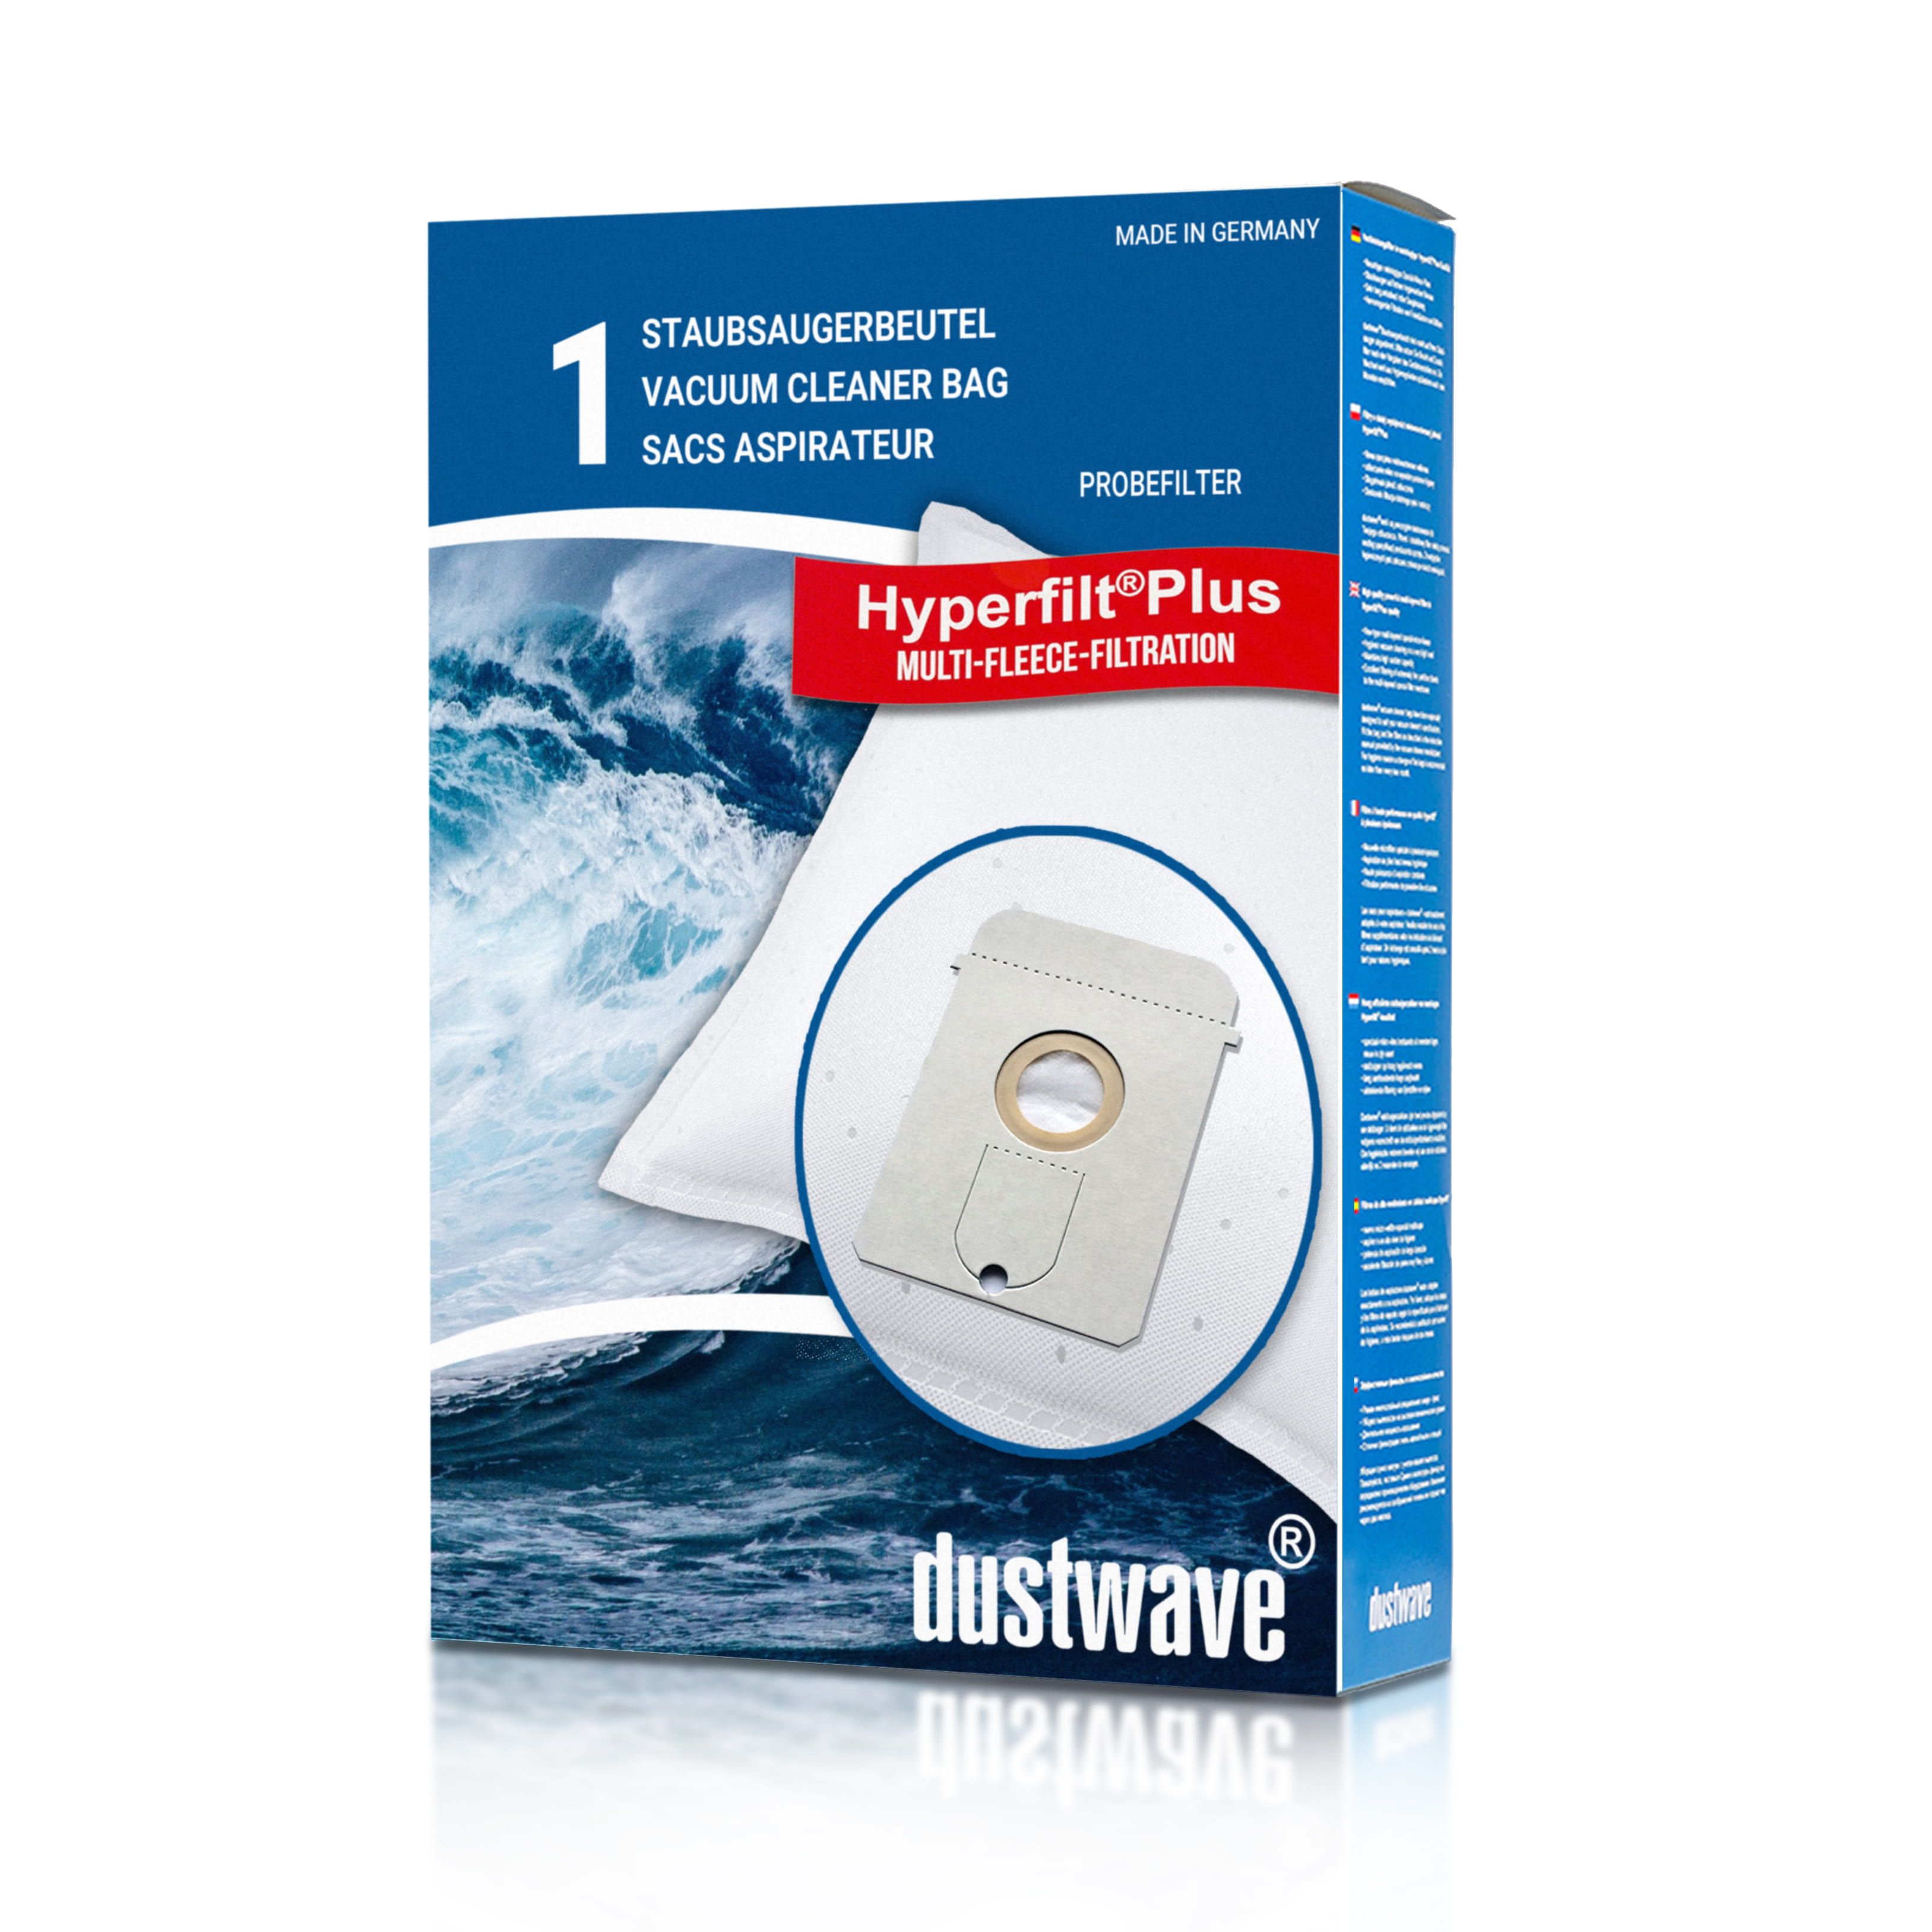 Dustwave® 1 Staubsaugerbeutel für AEG Vampyr 825 i Electronic - hocheffizient, mehrlagiges Mikrovlies mit Hygieneverschluss - Made in Germany